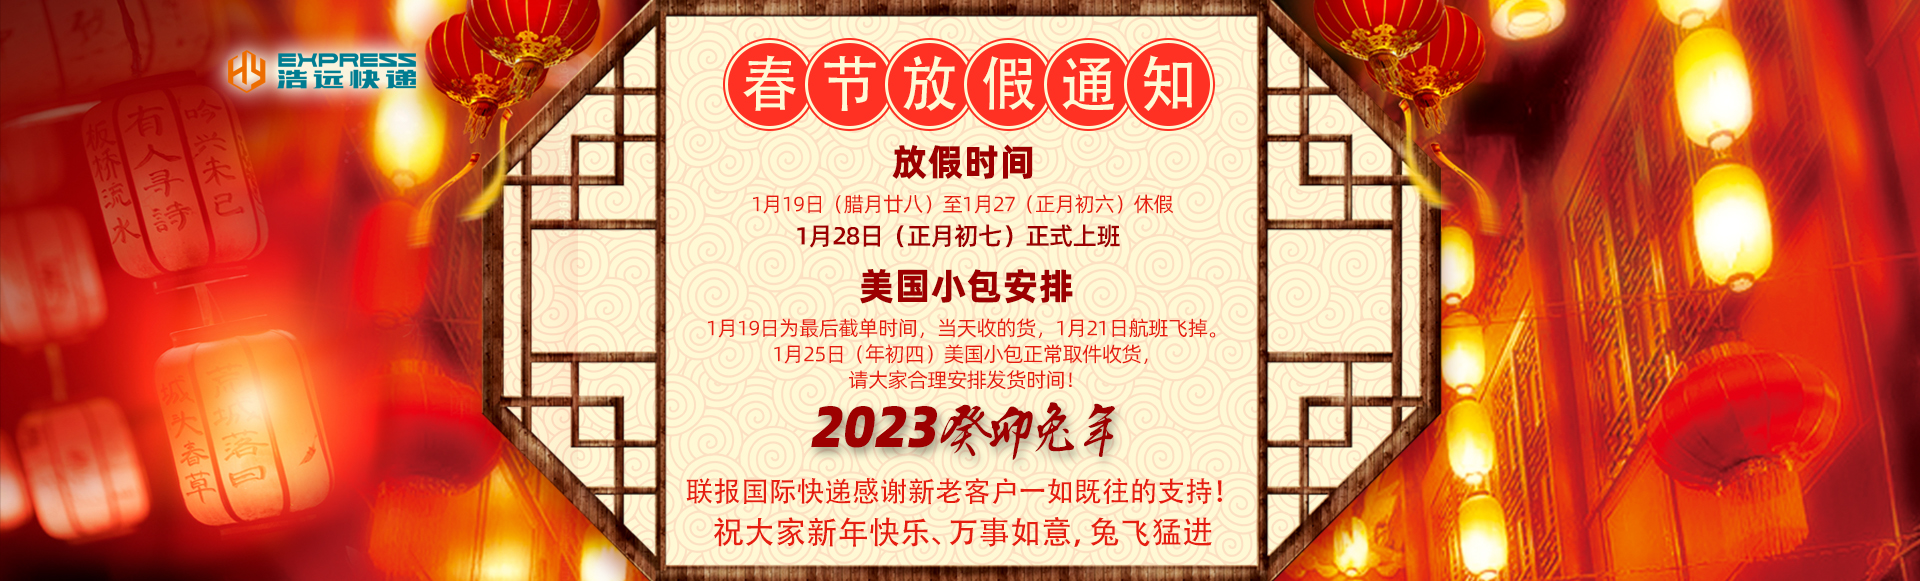 杭州国际快递2023放假时间